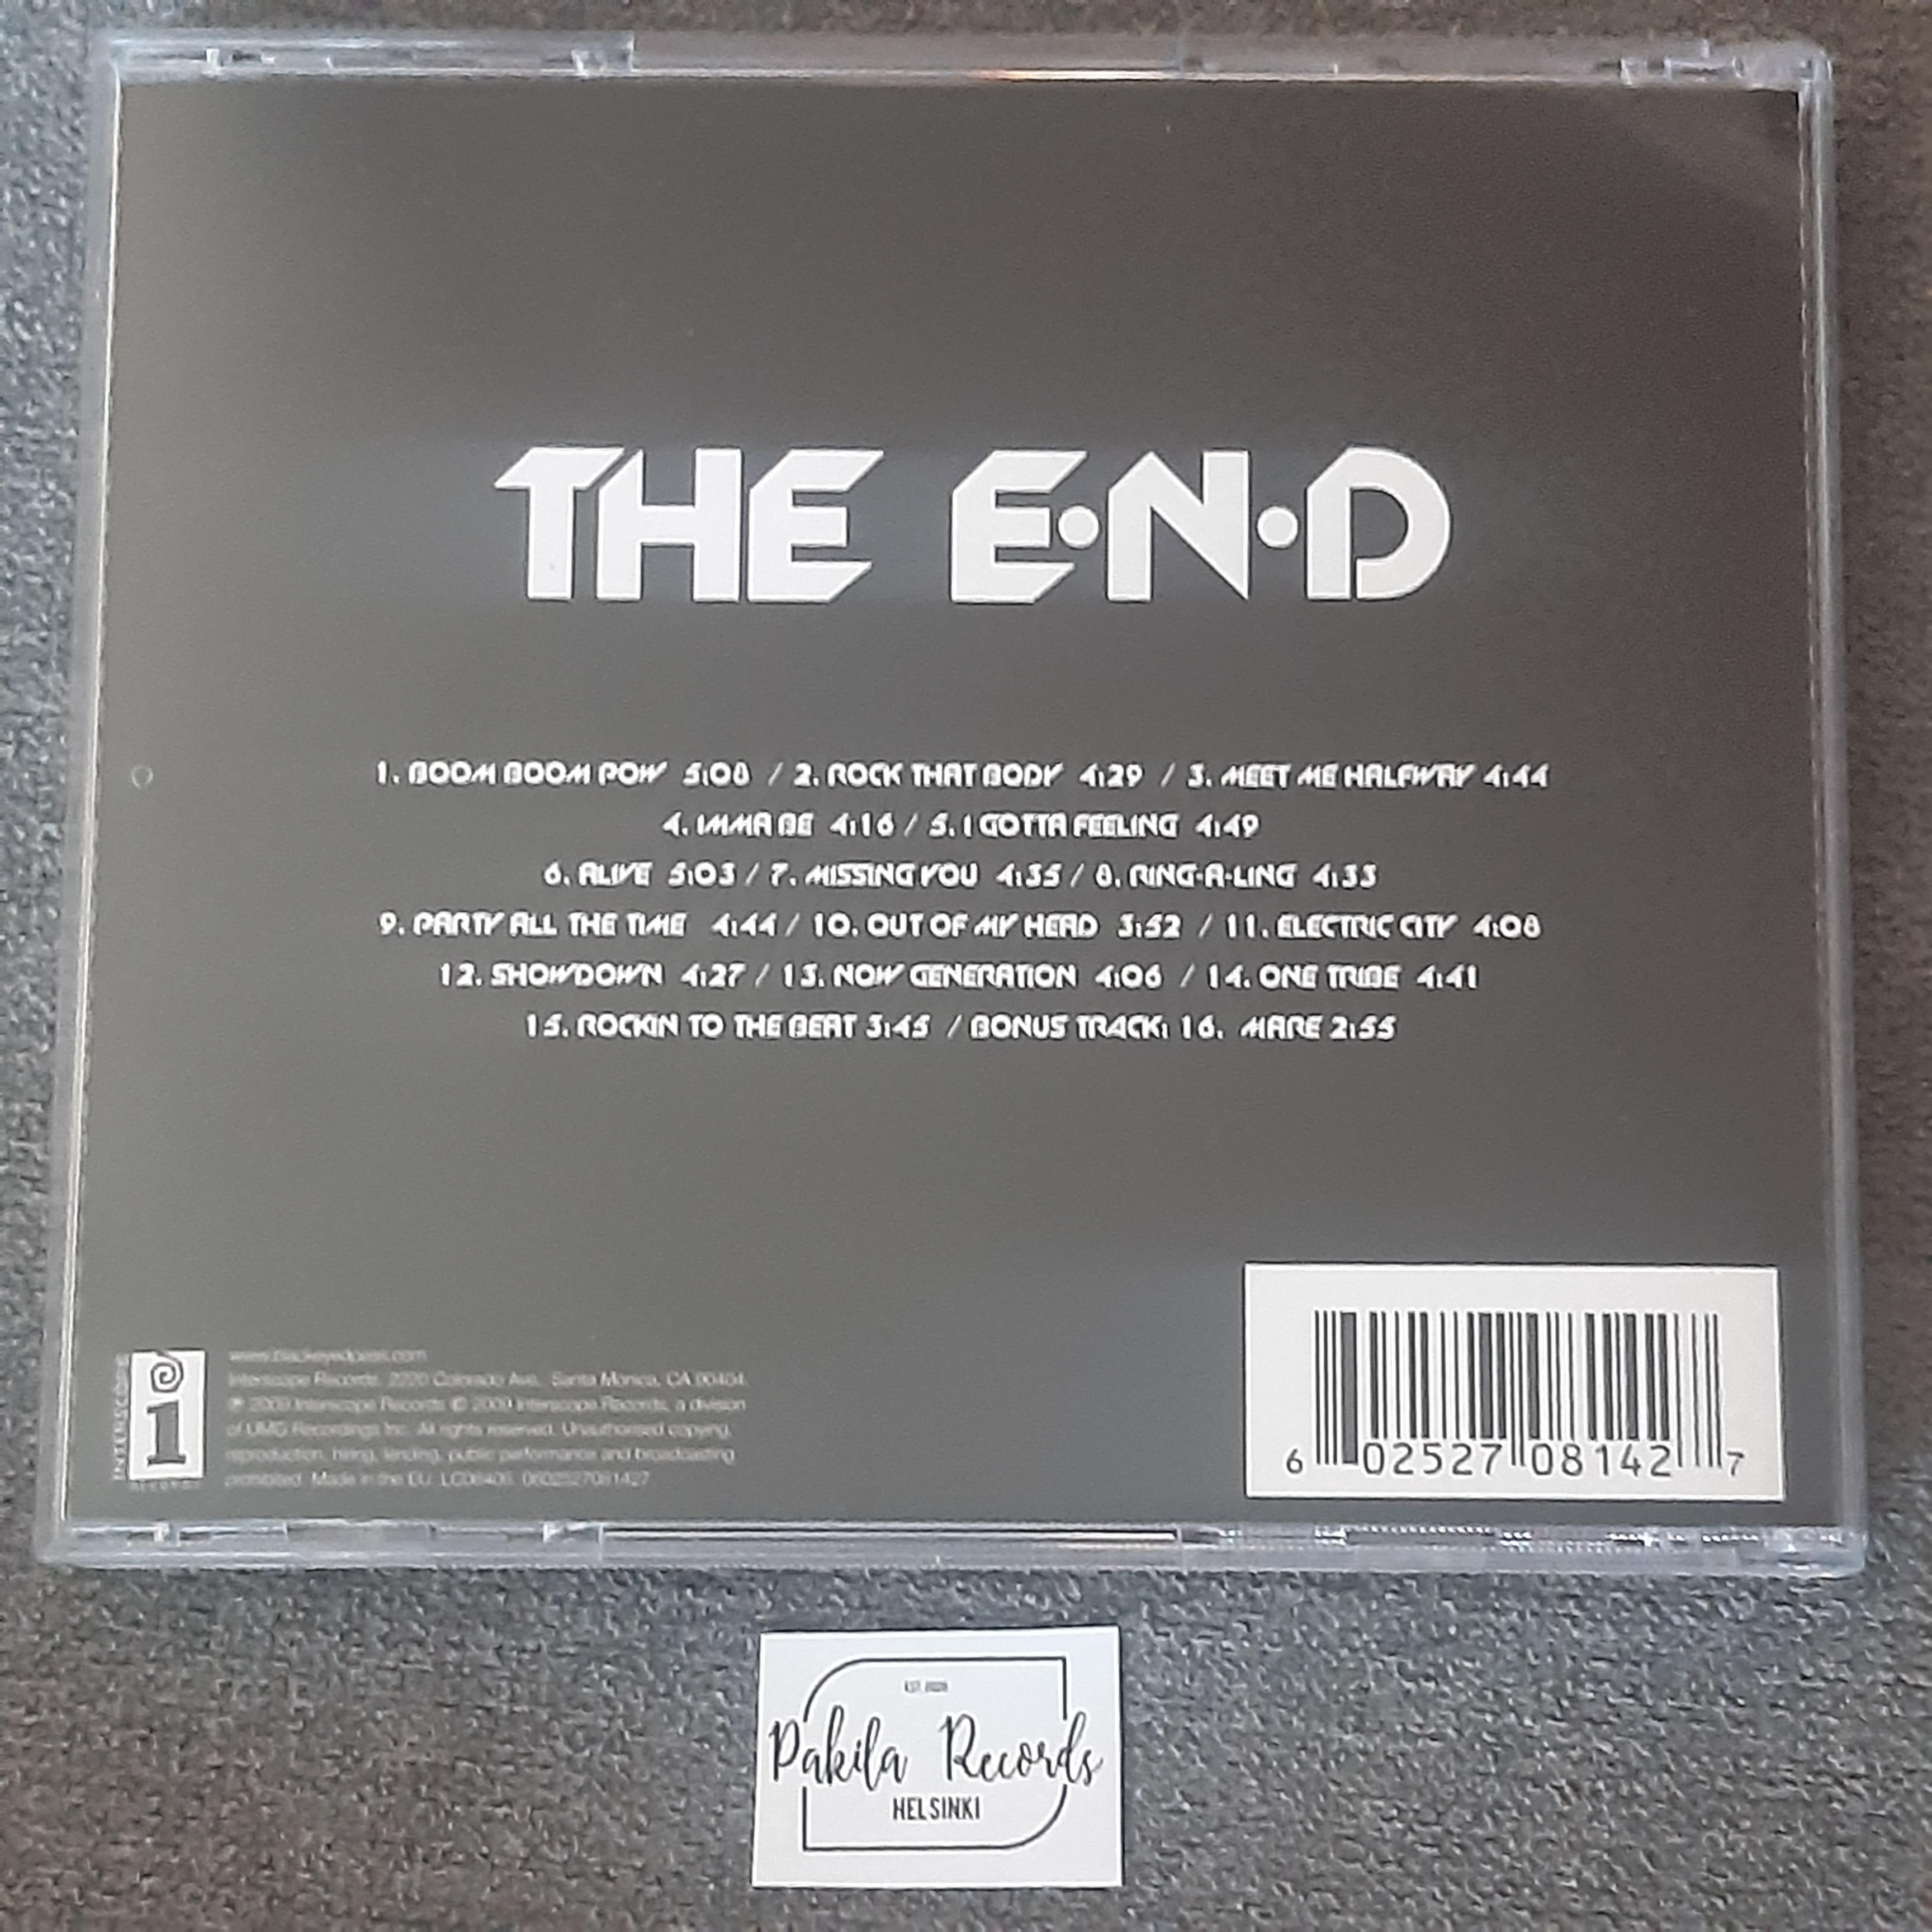 The Black Eyed Peas - The E.N.D. - CD (käytetty)